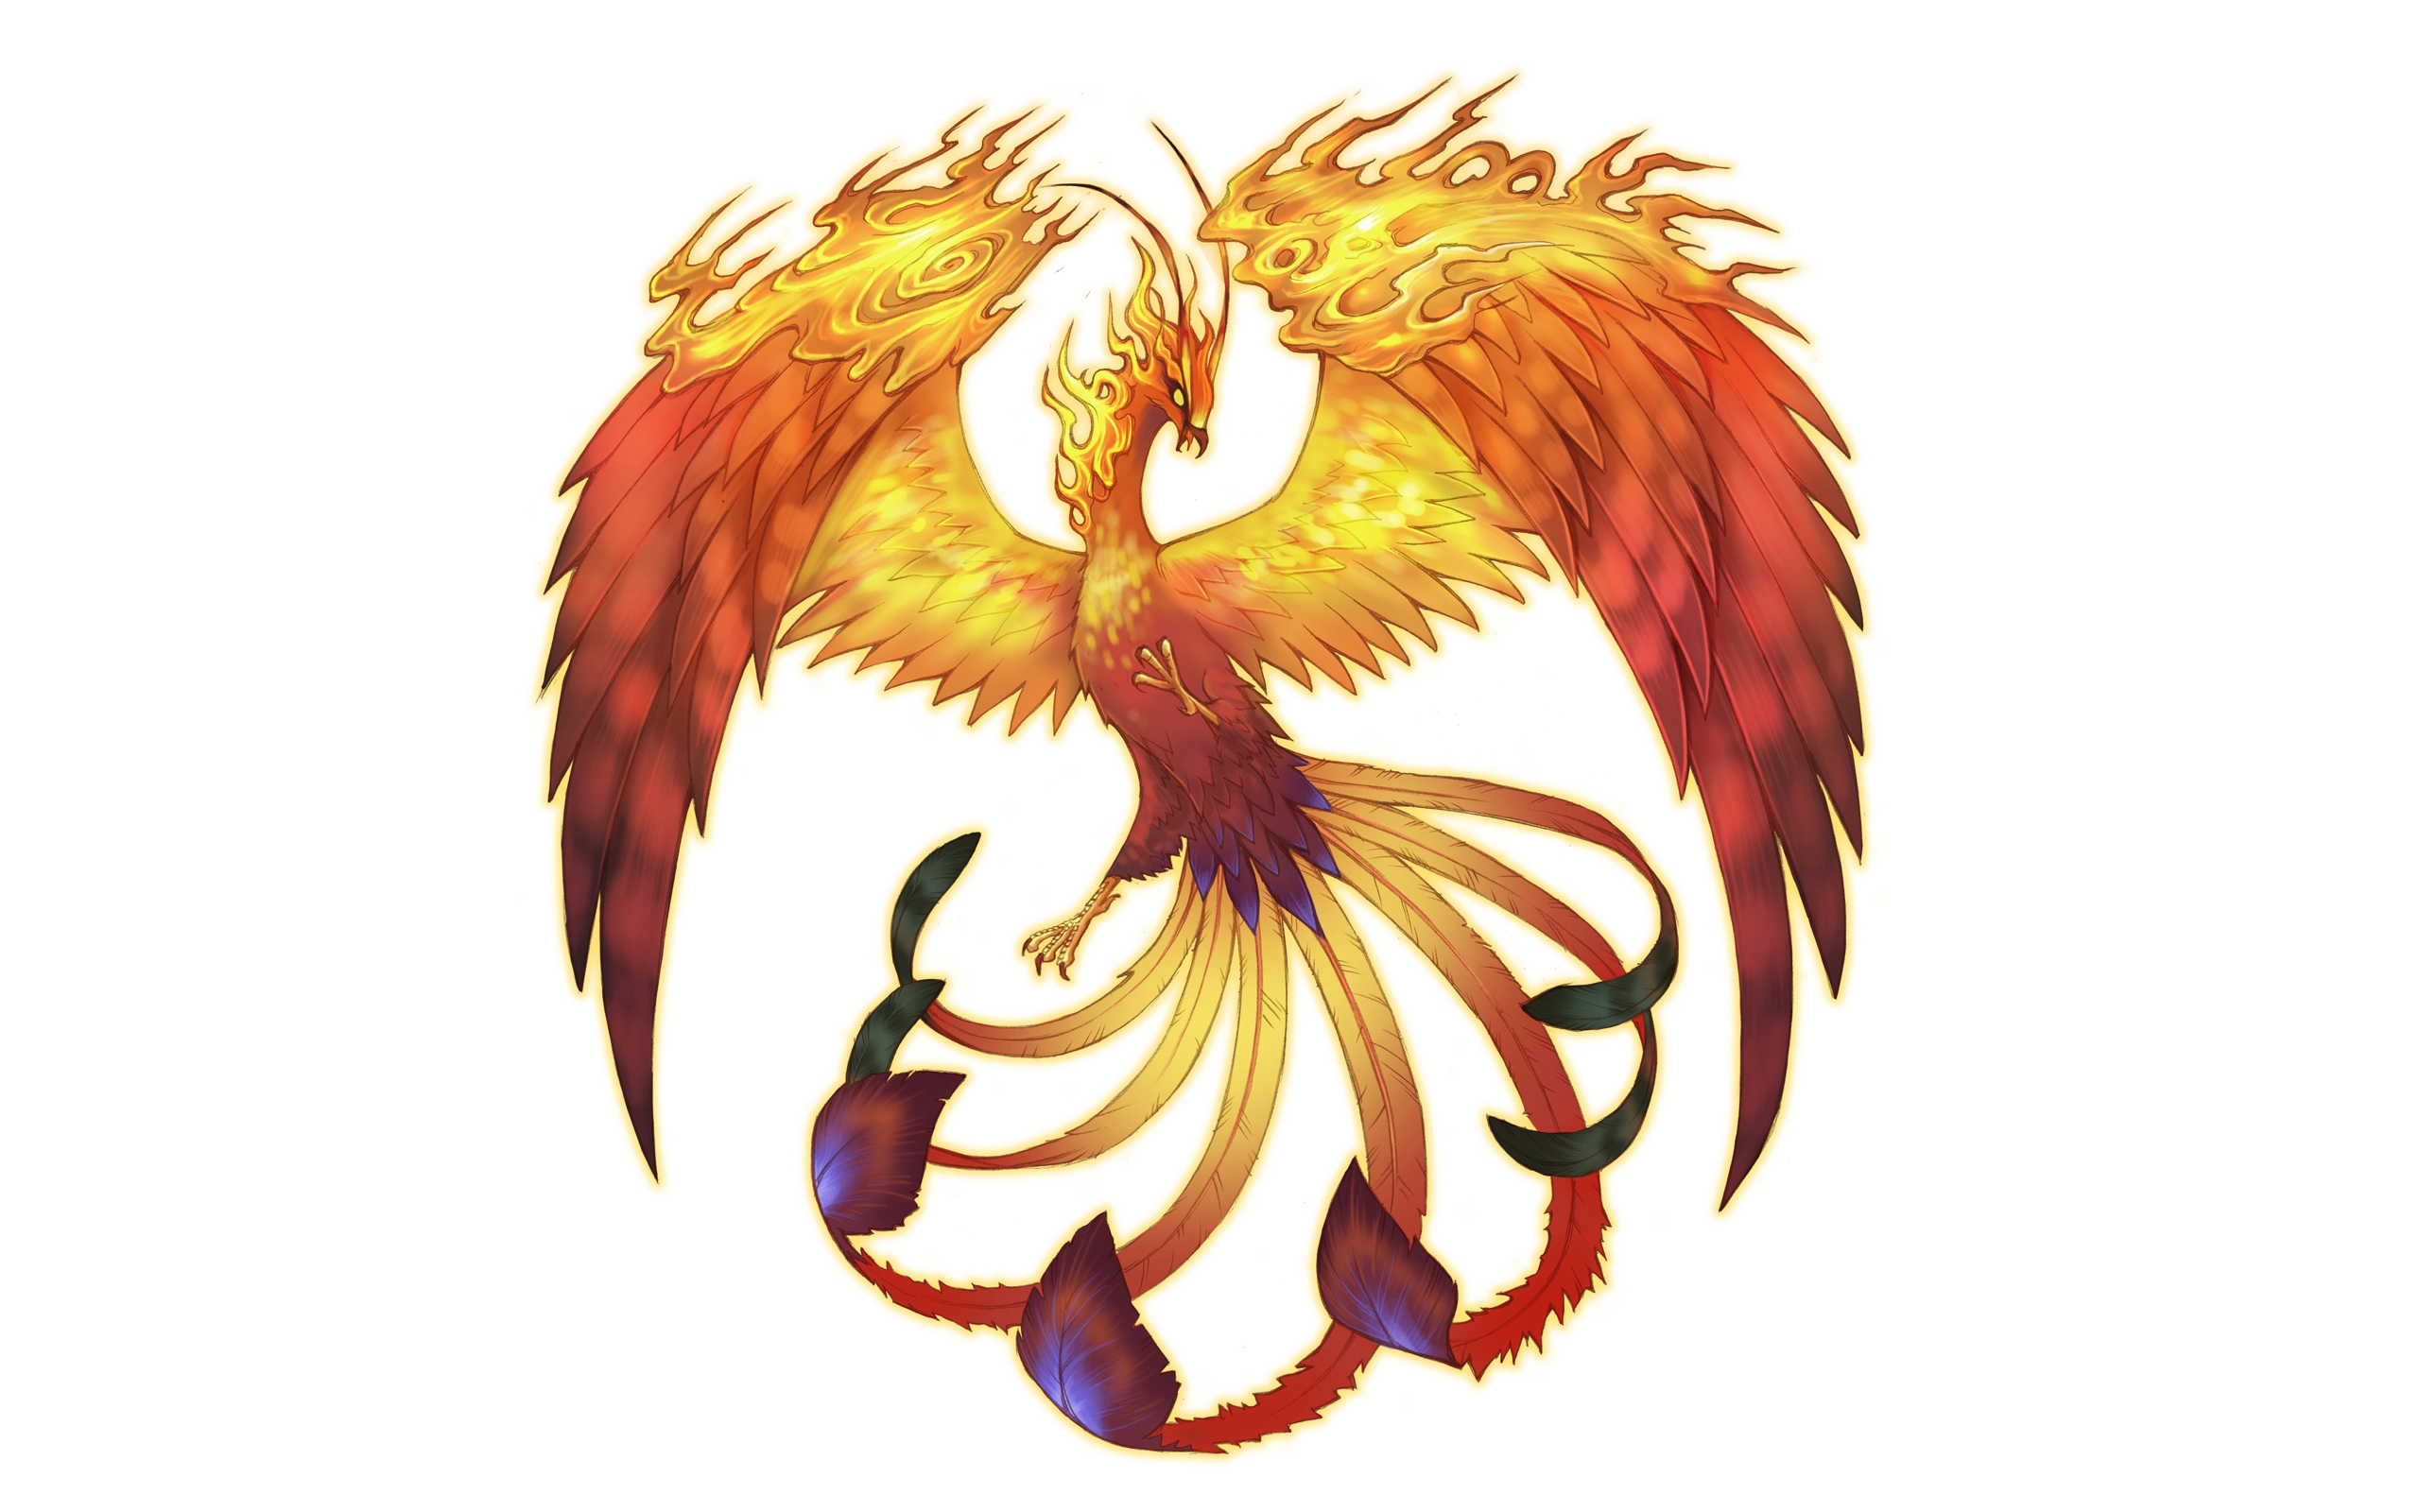 Fantasy desktop wallpaper with a majestic Phoenix - Spectral Souls.